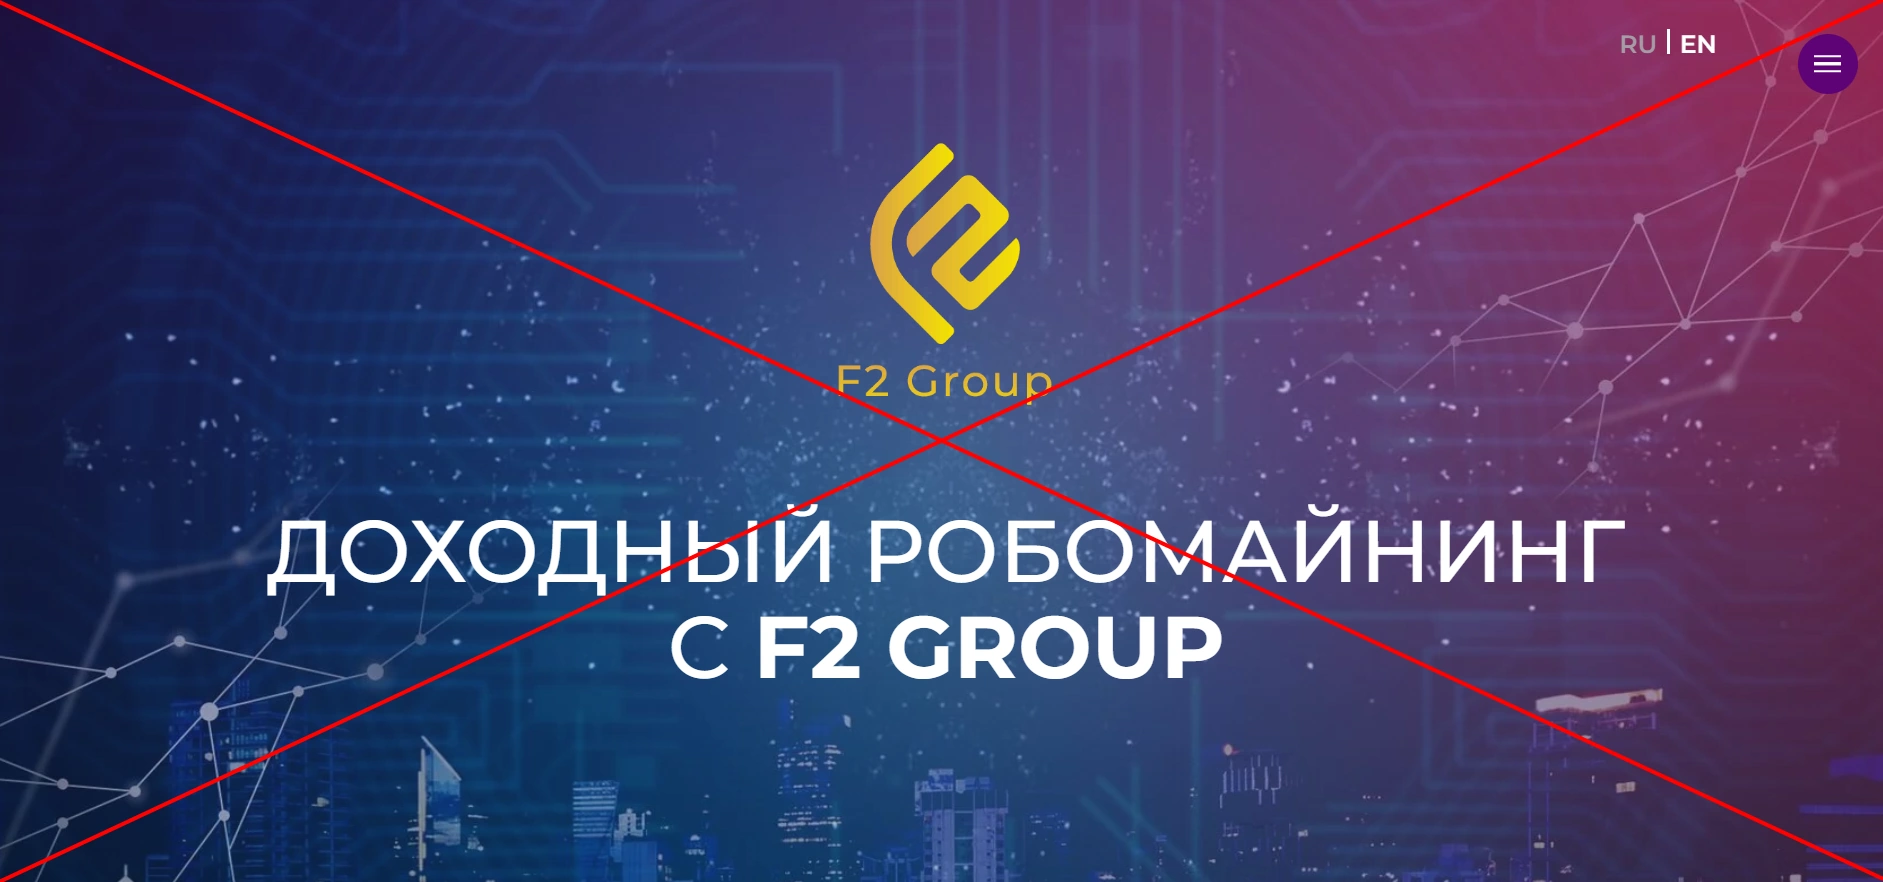 F2 GROUP отзывы клиентов - робомайнинг от компании f2.group